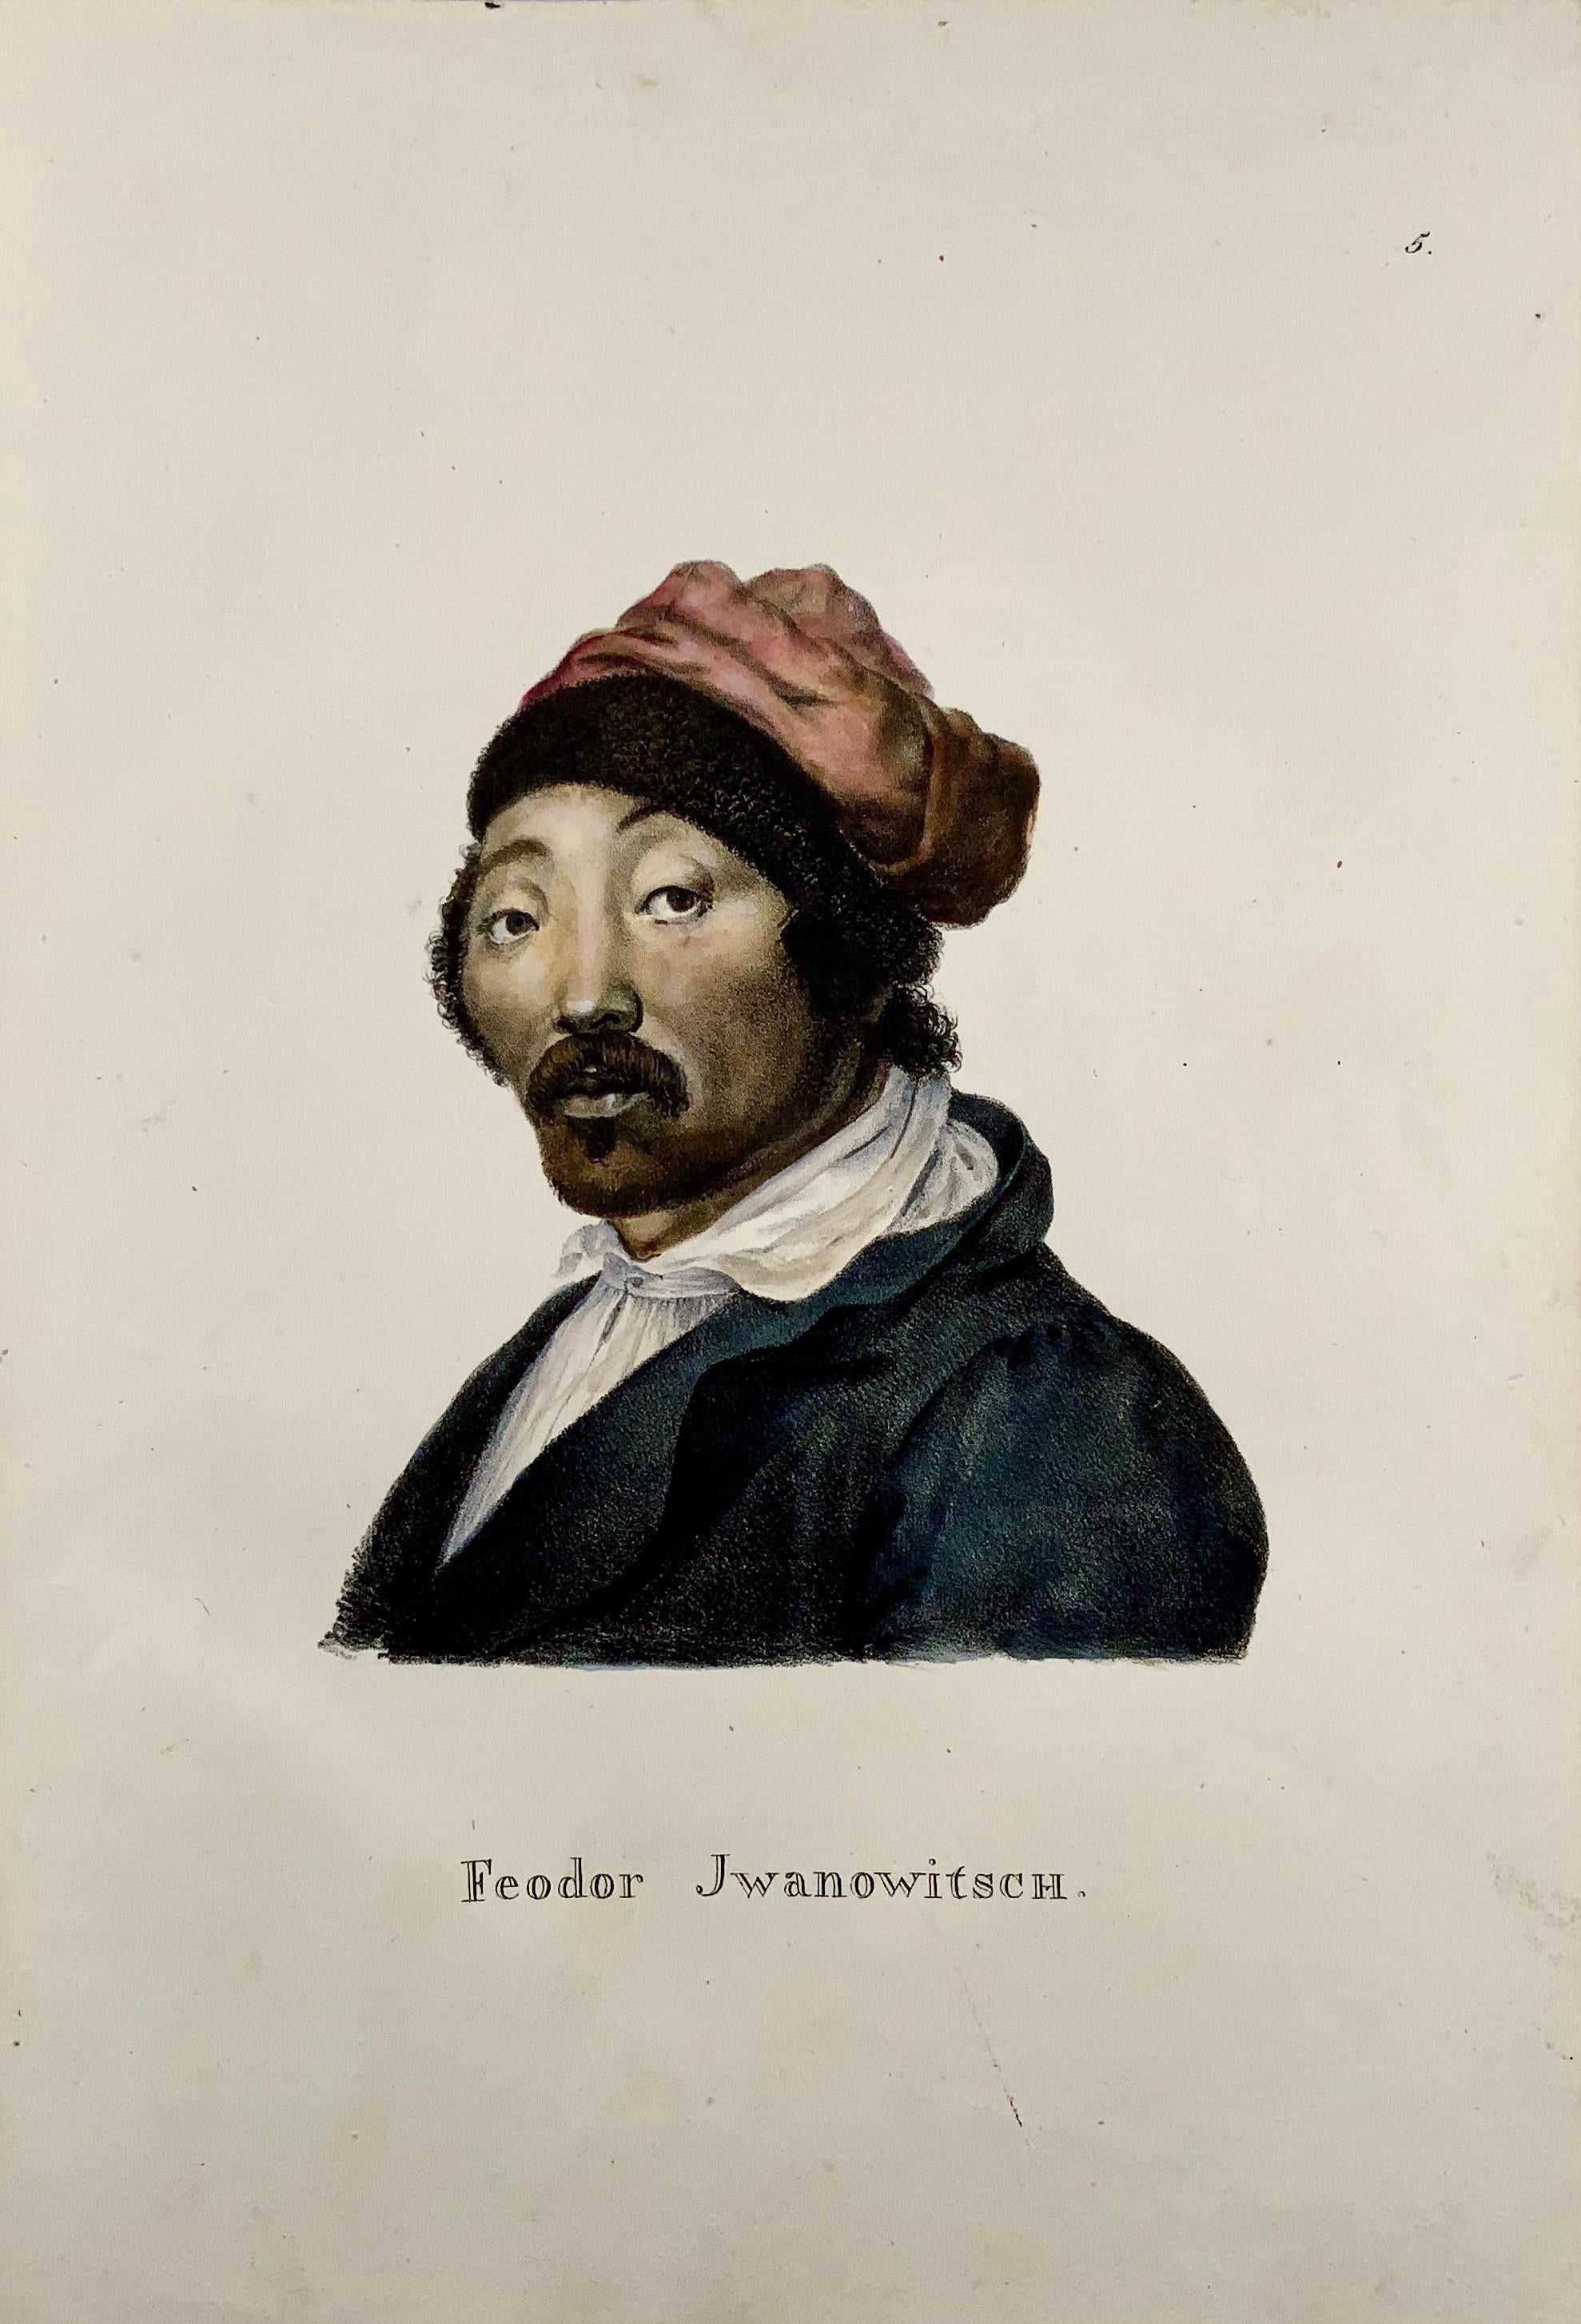 Ein frühes Folio-Steinlithographie-Porträt von Fedor Iwanowitsch (1765-1832); Kopf und Schultern dreiviertel nach links gedreht. Er hat einen Schnurrbart mit leichtem Bart und trägt eine pelzbesetzte Mütze. 

Lithografie, die dem berühmten